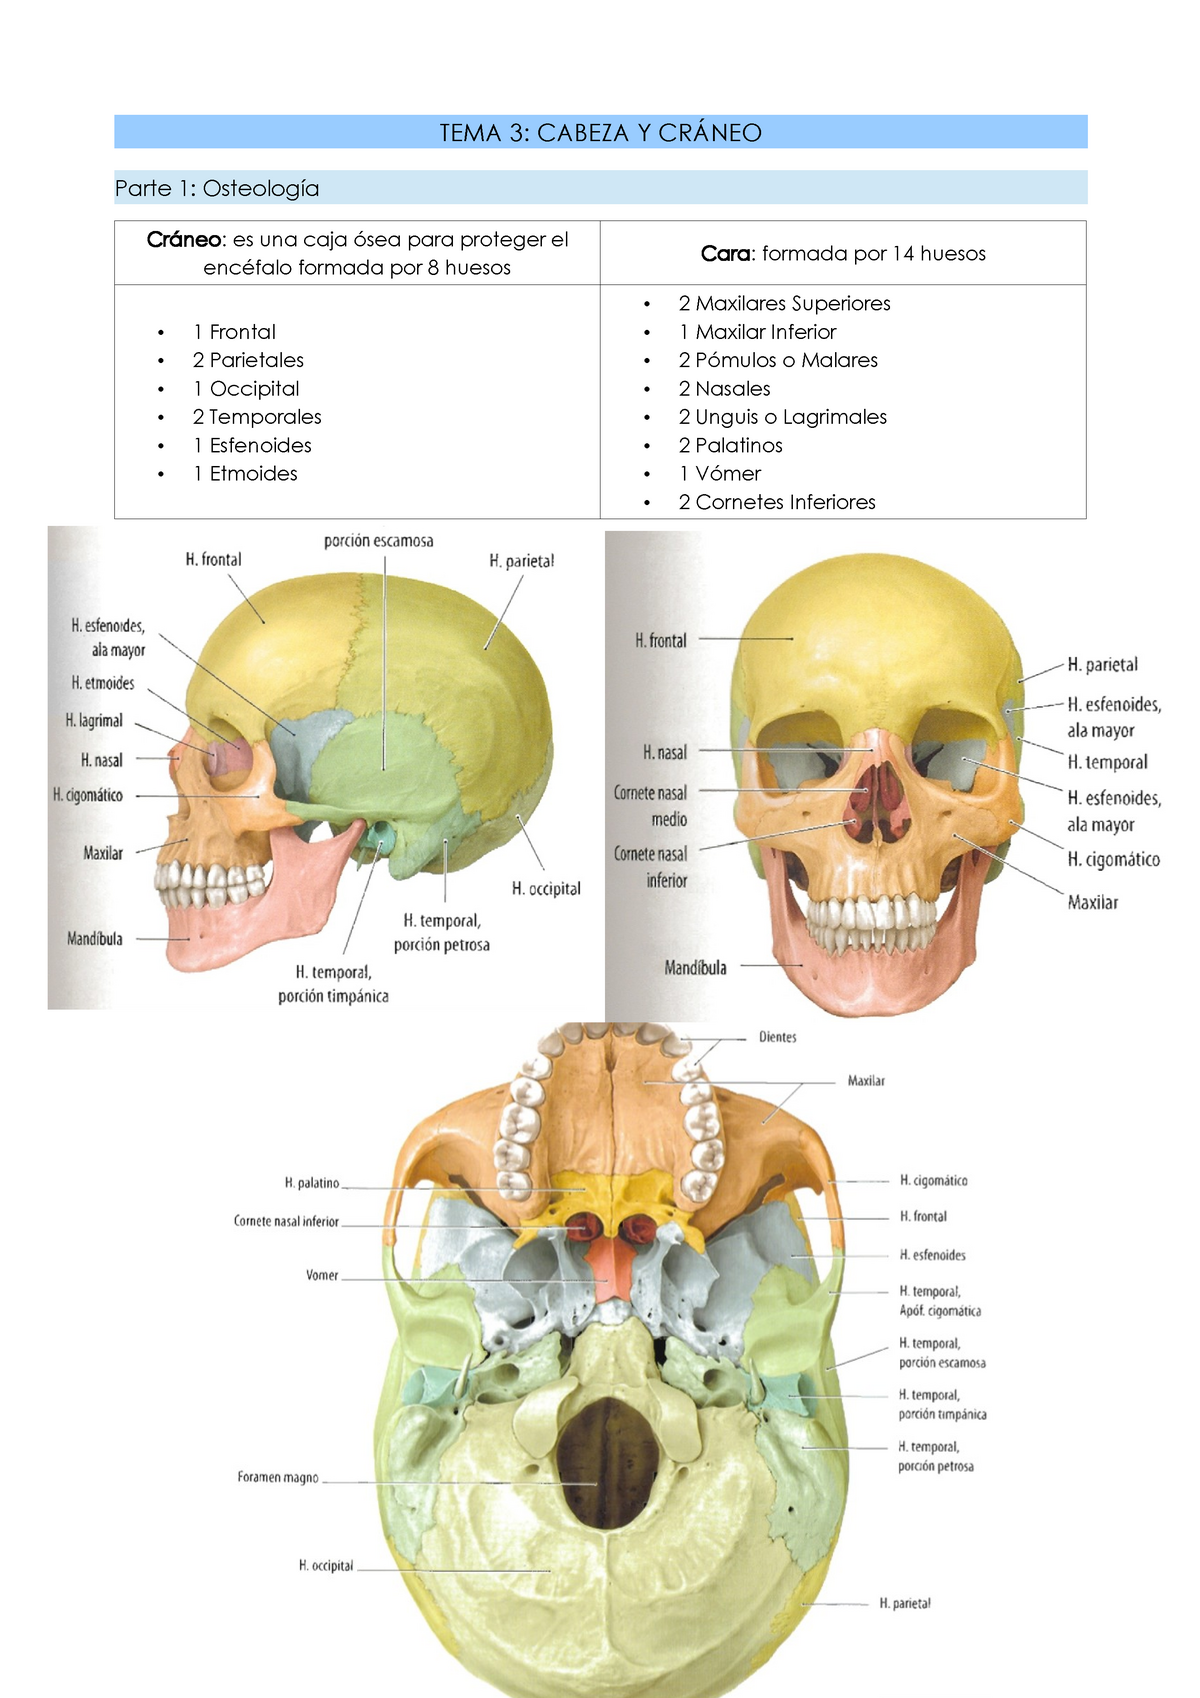 Cabeza Y Cráneo Osteología Tema 3 Cabeza Y Parte 1 Es Una Caja 7548